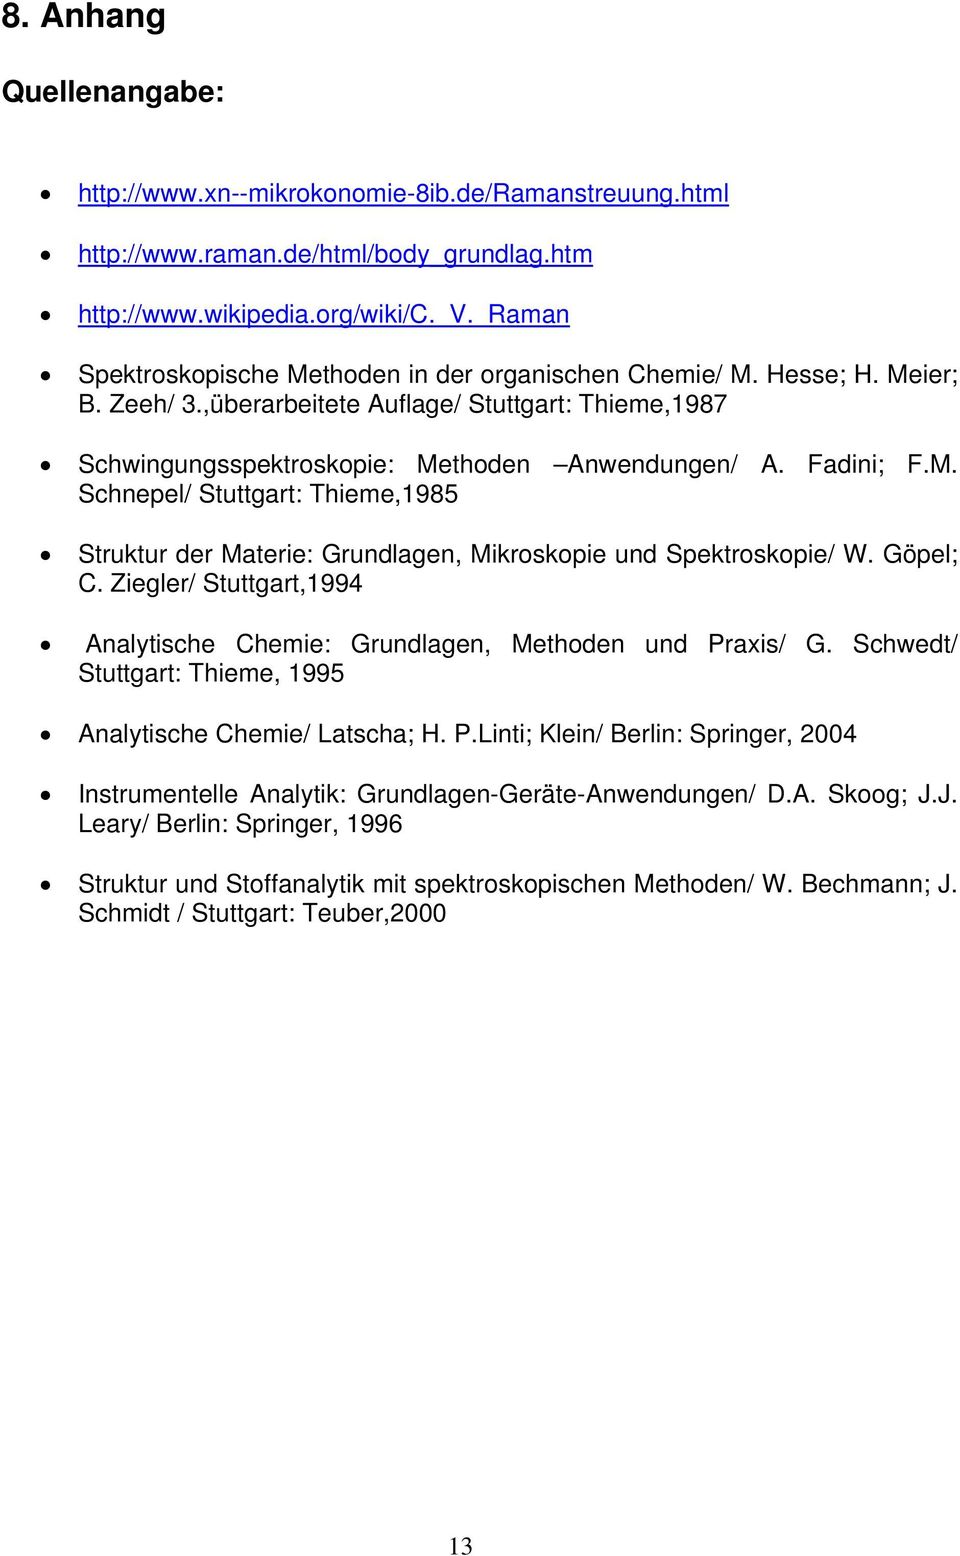 Göpl; C. Ziglr/ Stuttgart,1994 Analytisch Chmi: Grundlagn, Mthodn und Praxis/ G. Schwdt/ Stuttgart: Thim, 1995 Analytisch Chmi/ Latscha; H. P.Linti; Klin/ Brlin: Springr, 2004 Instrumntll Analytik: Grundlagn-Grät-Anwndungn/ D.